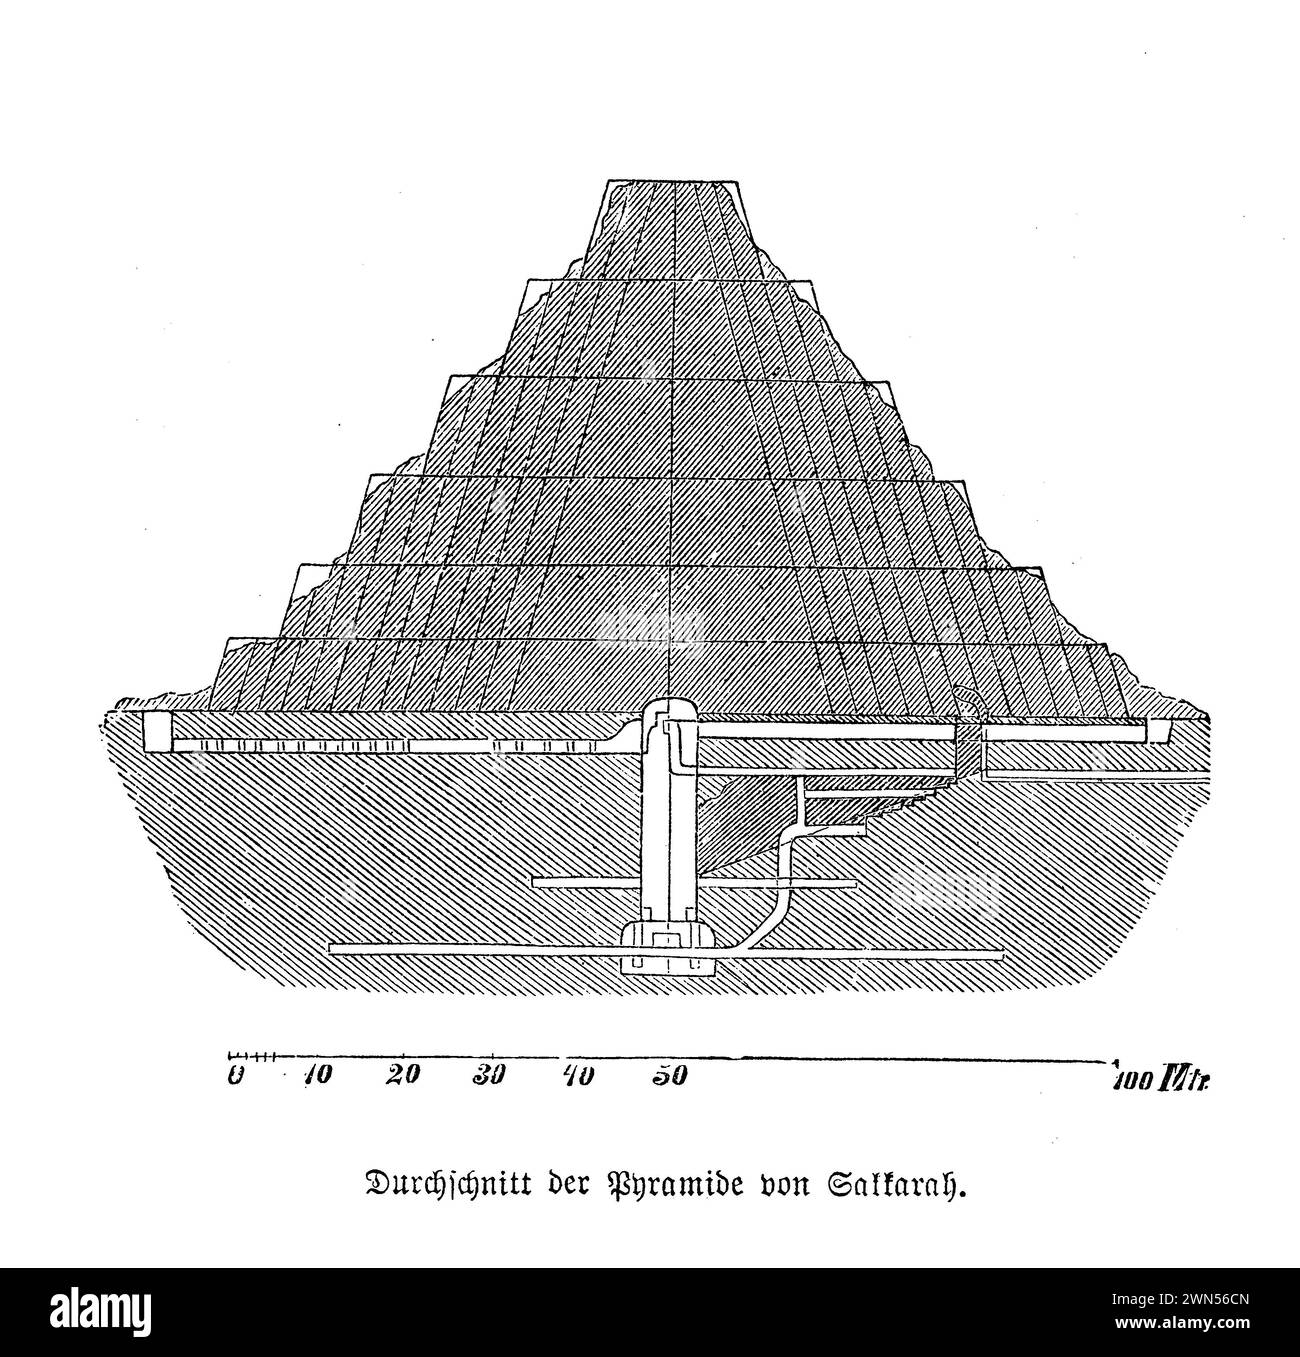 Die Pyramide von Djoser, die sich in der ägyptischen Nekropole von Sakkara befindet, ist eines der ältesten kolossalen Steinbauten in der ägyptischen Geschichte und gilt als erster großformatiger Steinbau. Sie wurde im 27. Jahrhundert v. Chr. für die Beerdigung des Pharao Djoser durch seinen Architekten Imhotep errichtet. Diese Struktur ist ein Paradebeispiel für die frühe monumentale Architektur, stellt eine bedeutende Abkehr von den traditionellen Mastaba-Gräbern dieser Zeit dar und ebnet den Weg für die spätere Entwicklung der Pyramiden von Gizeh Stockfoto